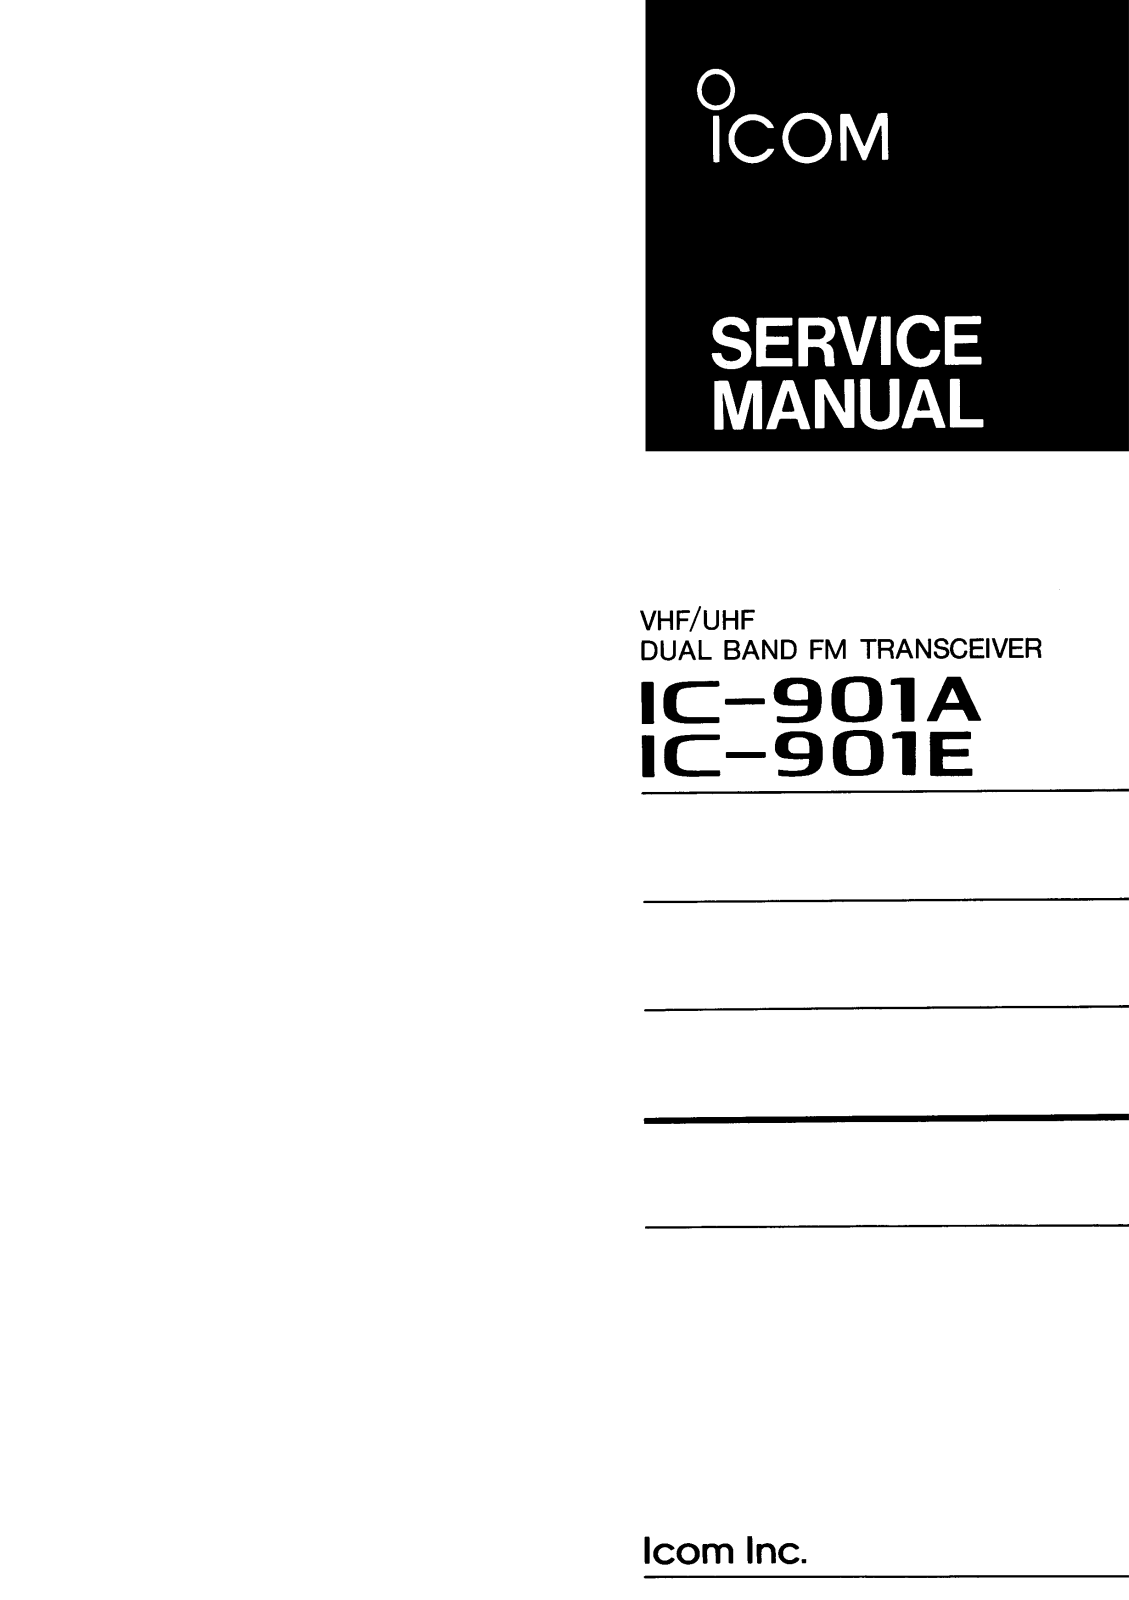 Icom IC-901E, IC-901A Service Manual